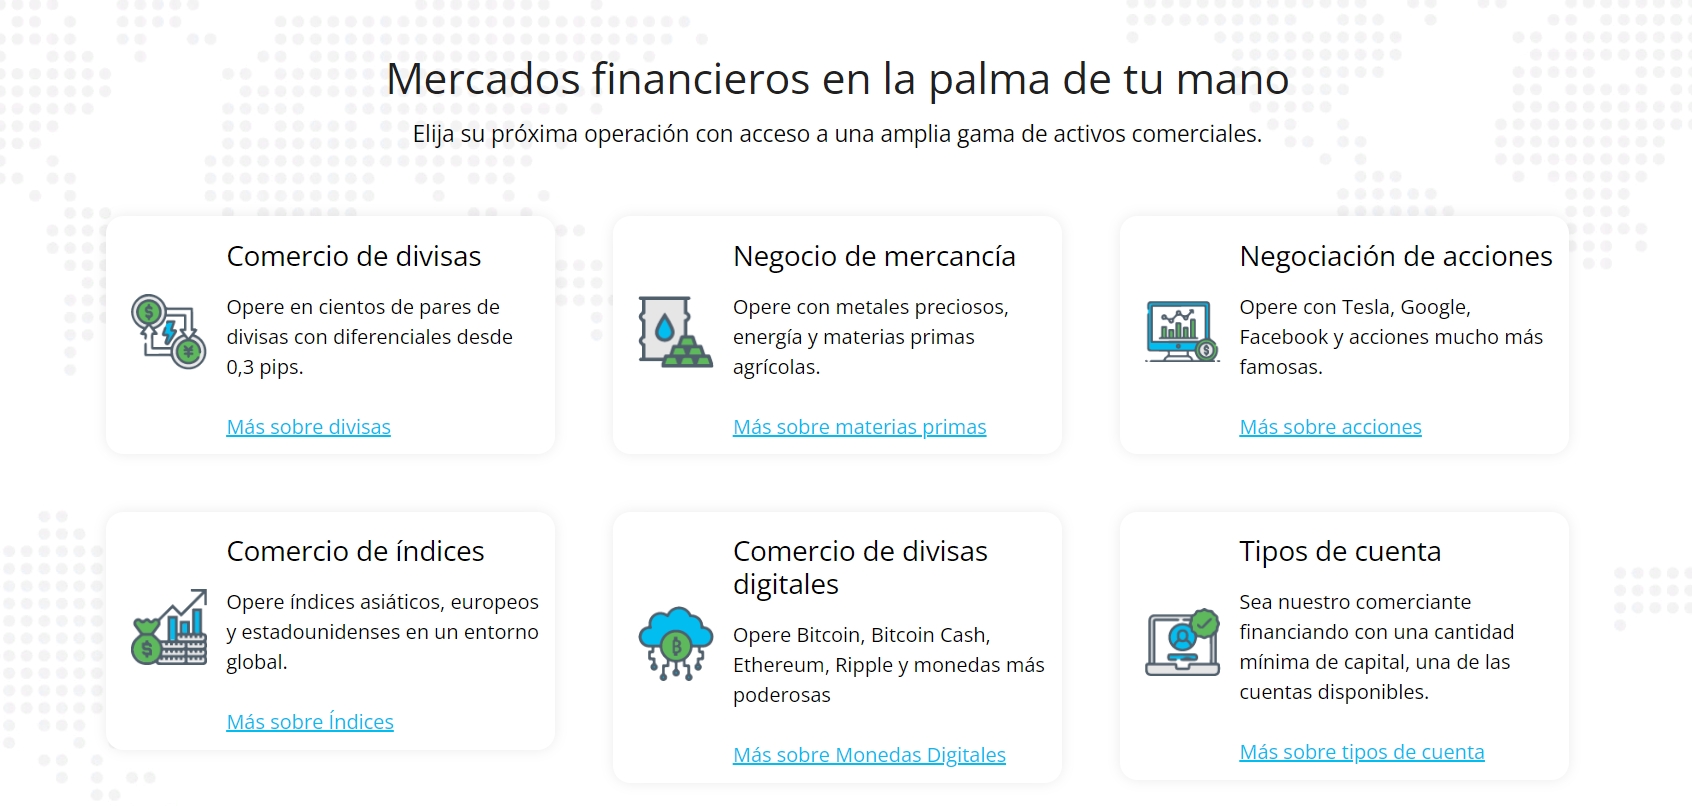 FxCapital 360 Mercados financieros